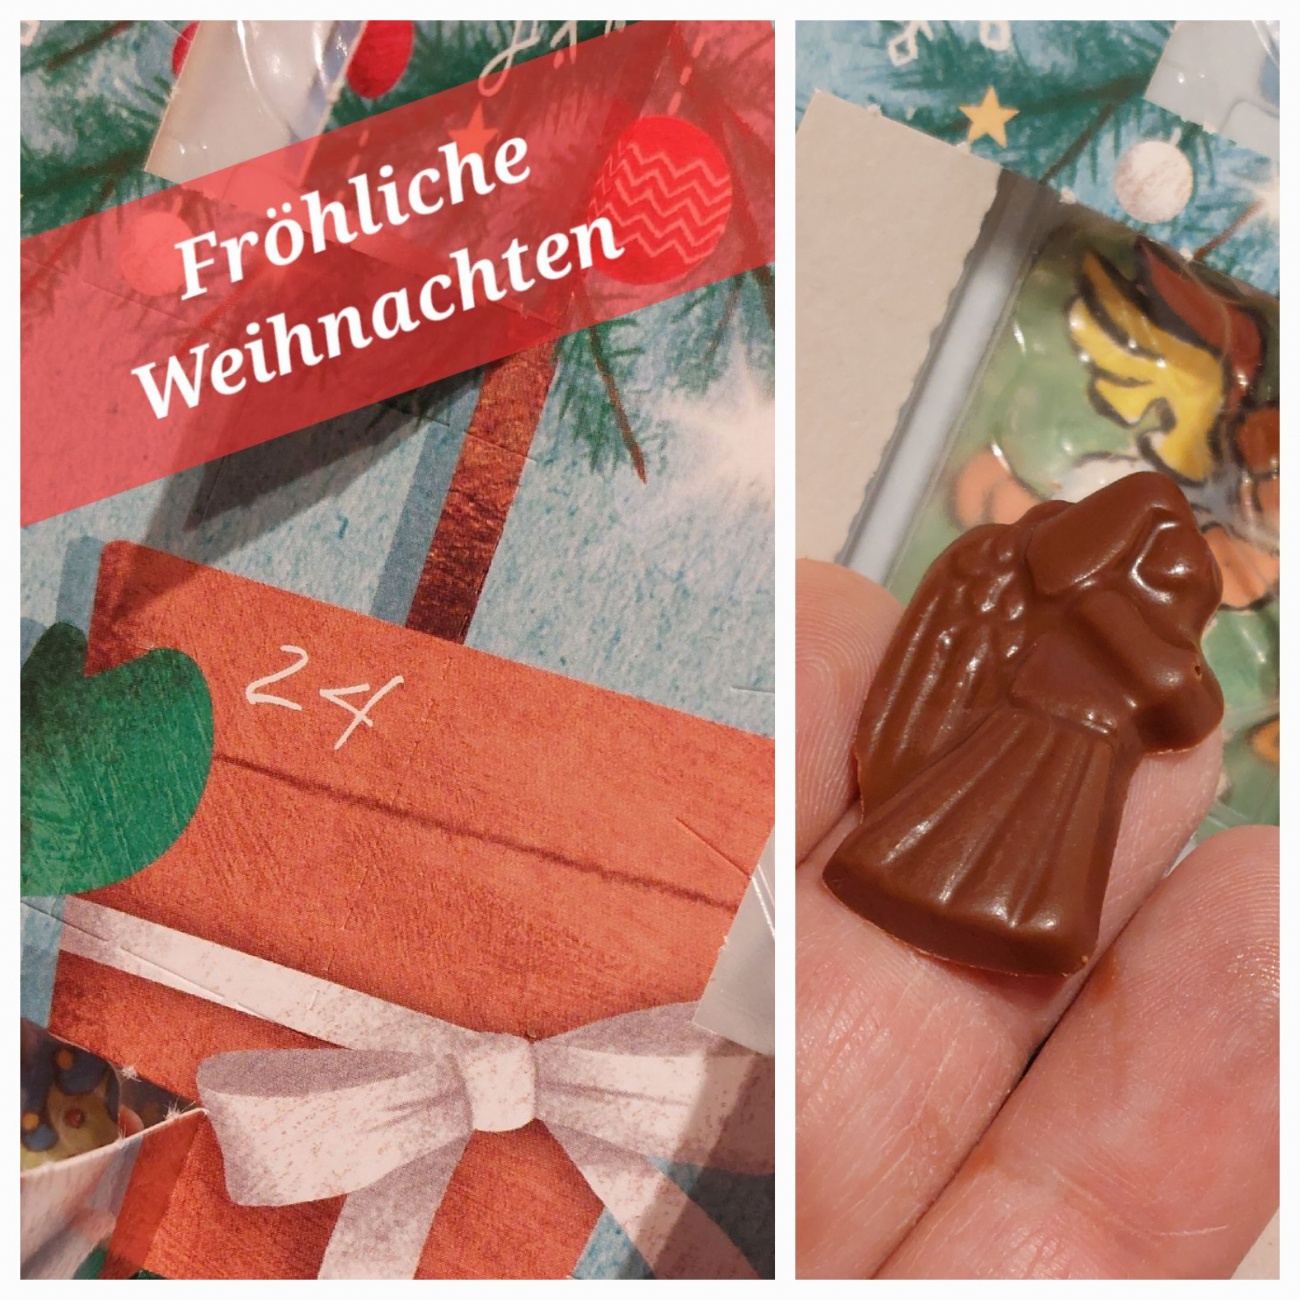 Foto: Martin Zehrer - Fröhliche Weihnachten!!!<br />
<br />
Das 24ste Türchen ist geöffnet.  :-) 